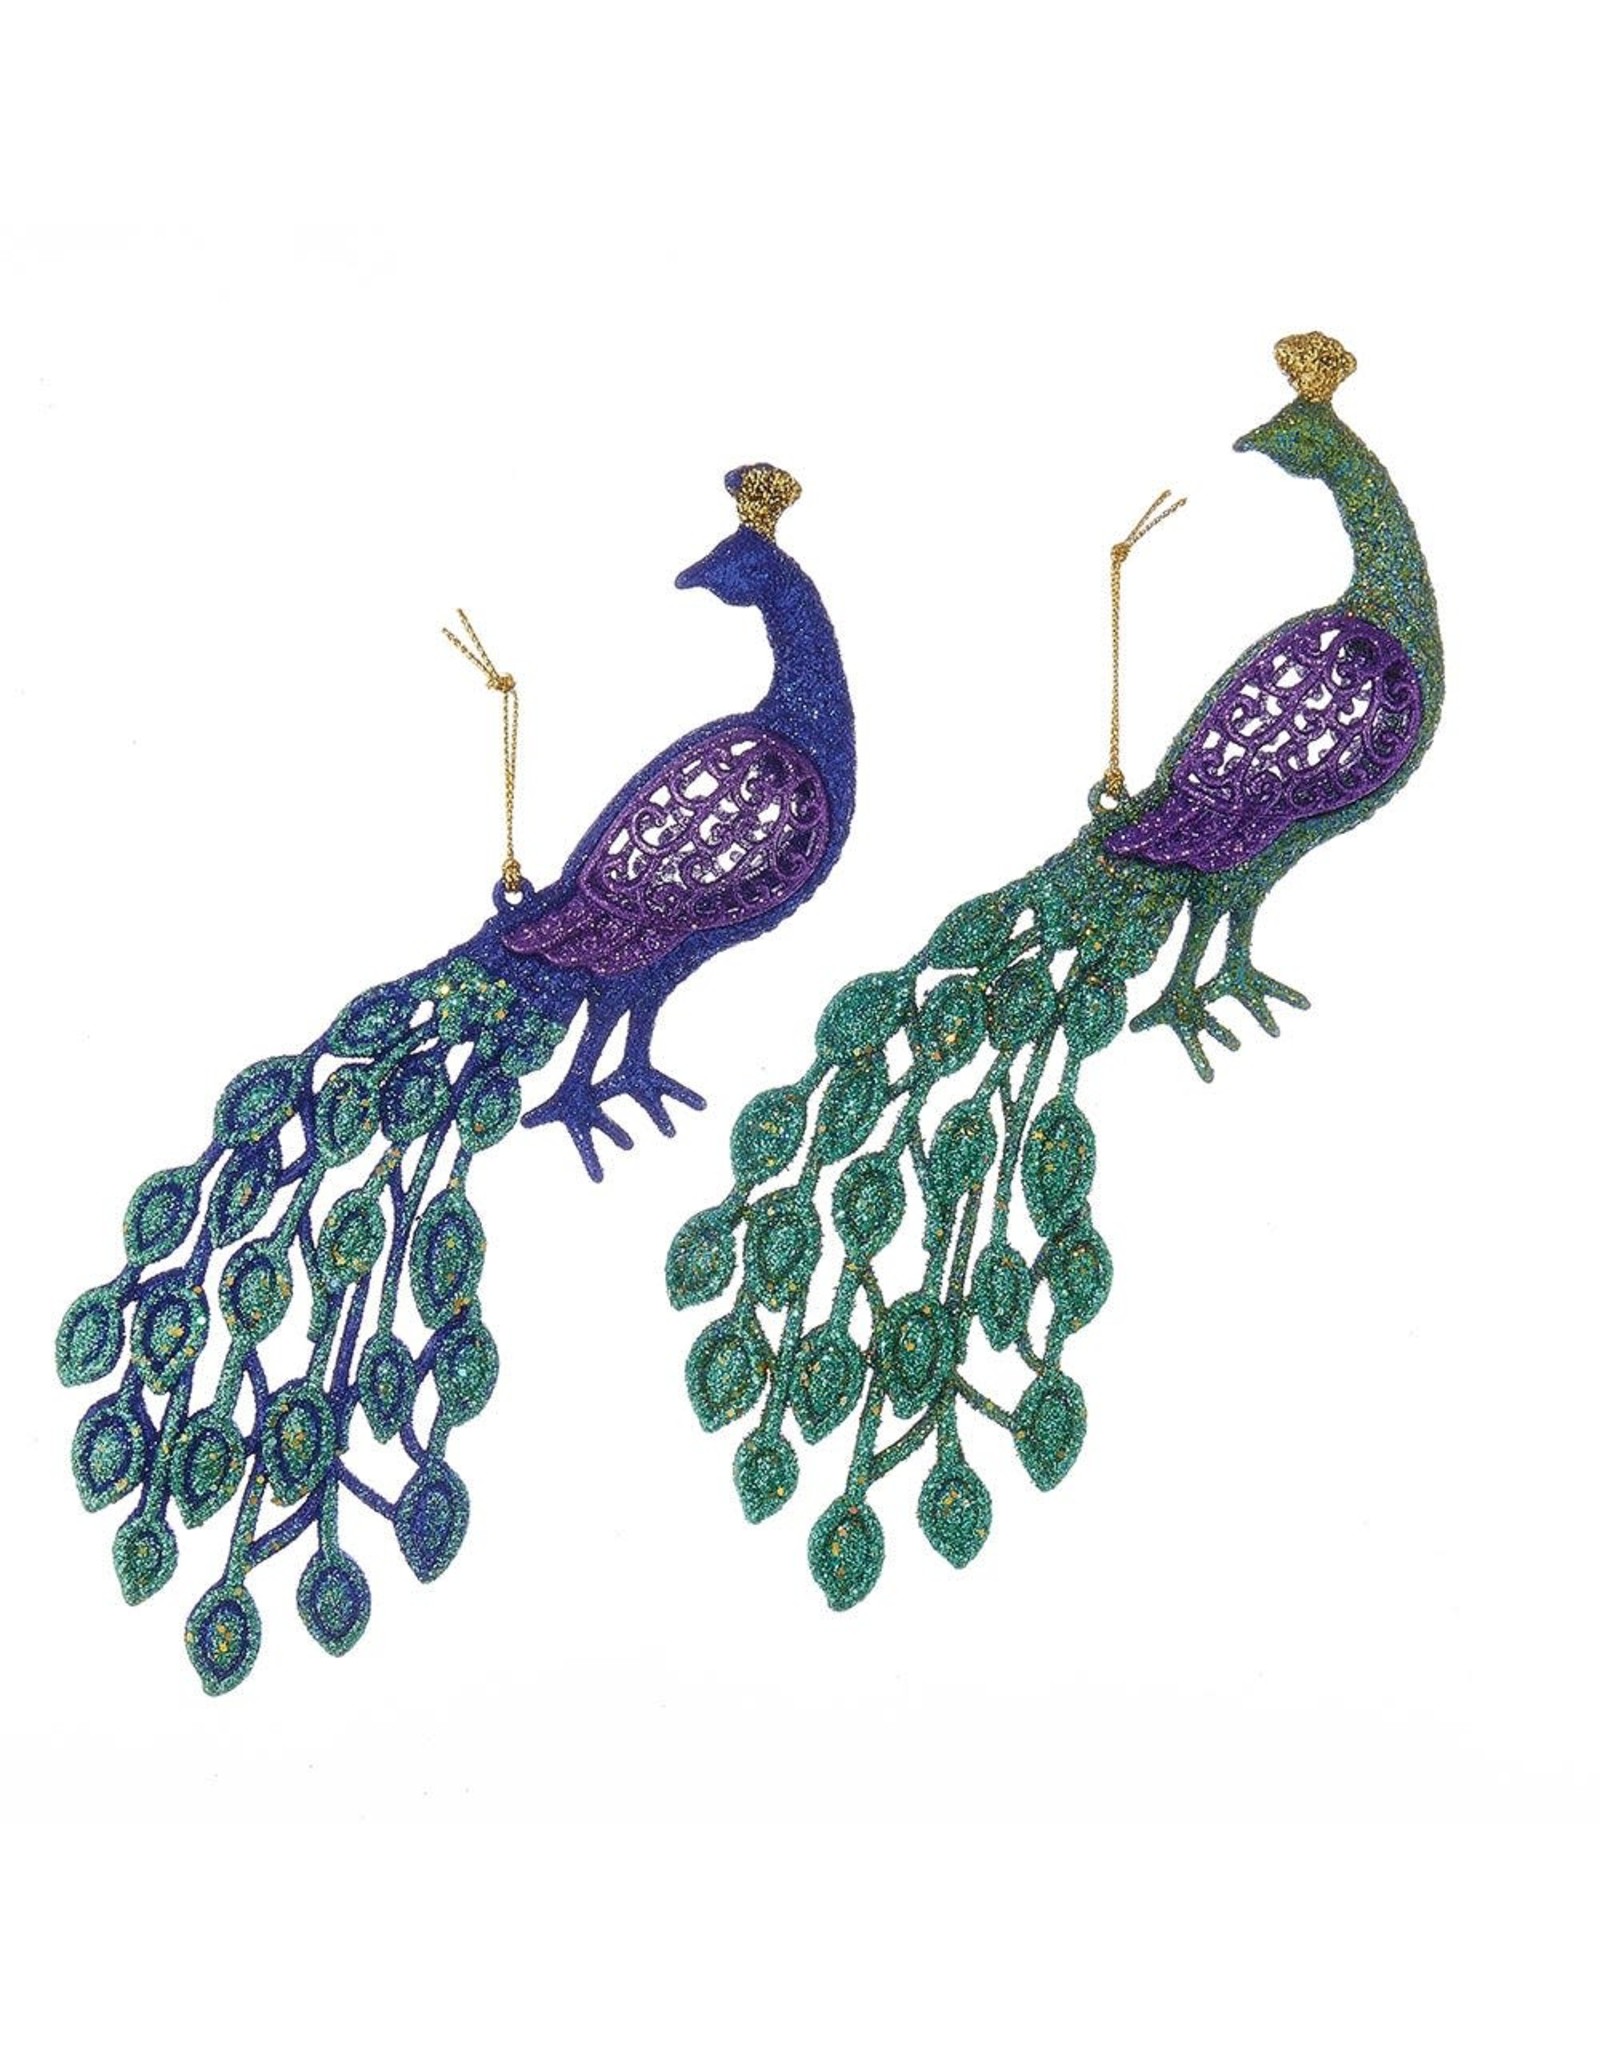 Kurt Adler Glittered Peacock Ornaments Set of 2